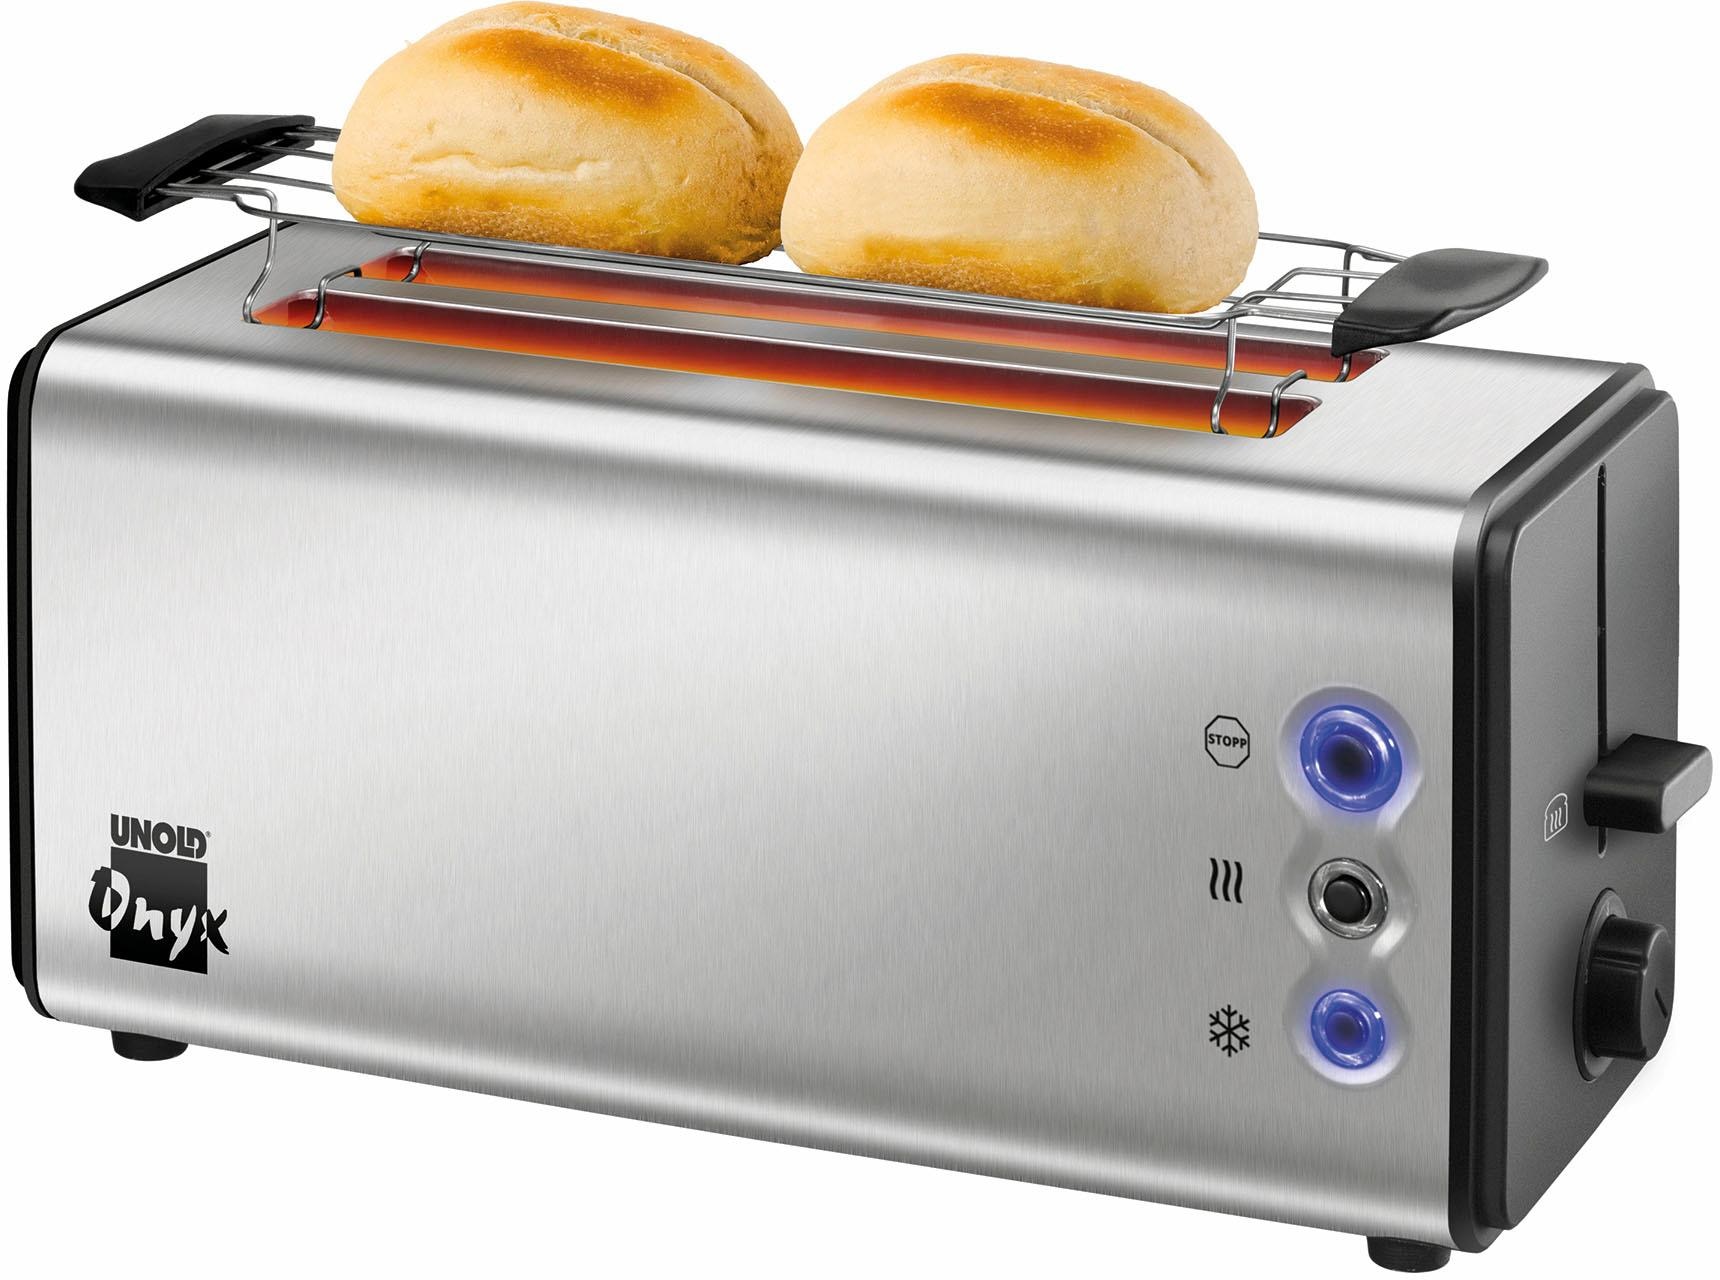 Toaster jetzt online kaufen bei Quelle – Wir liefern